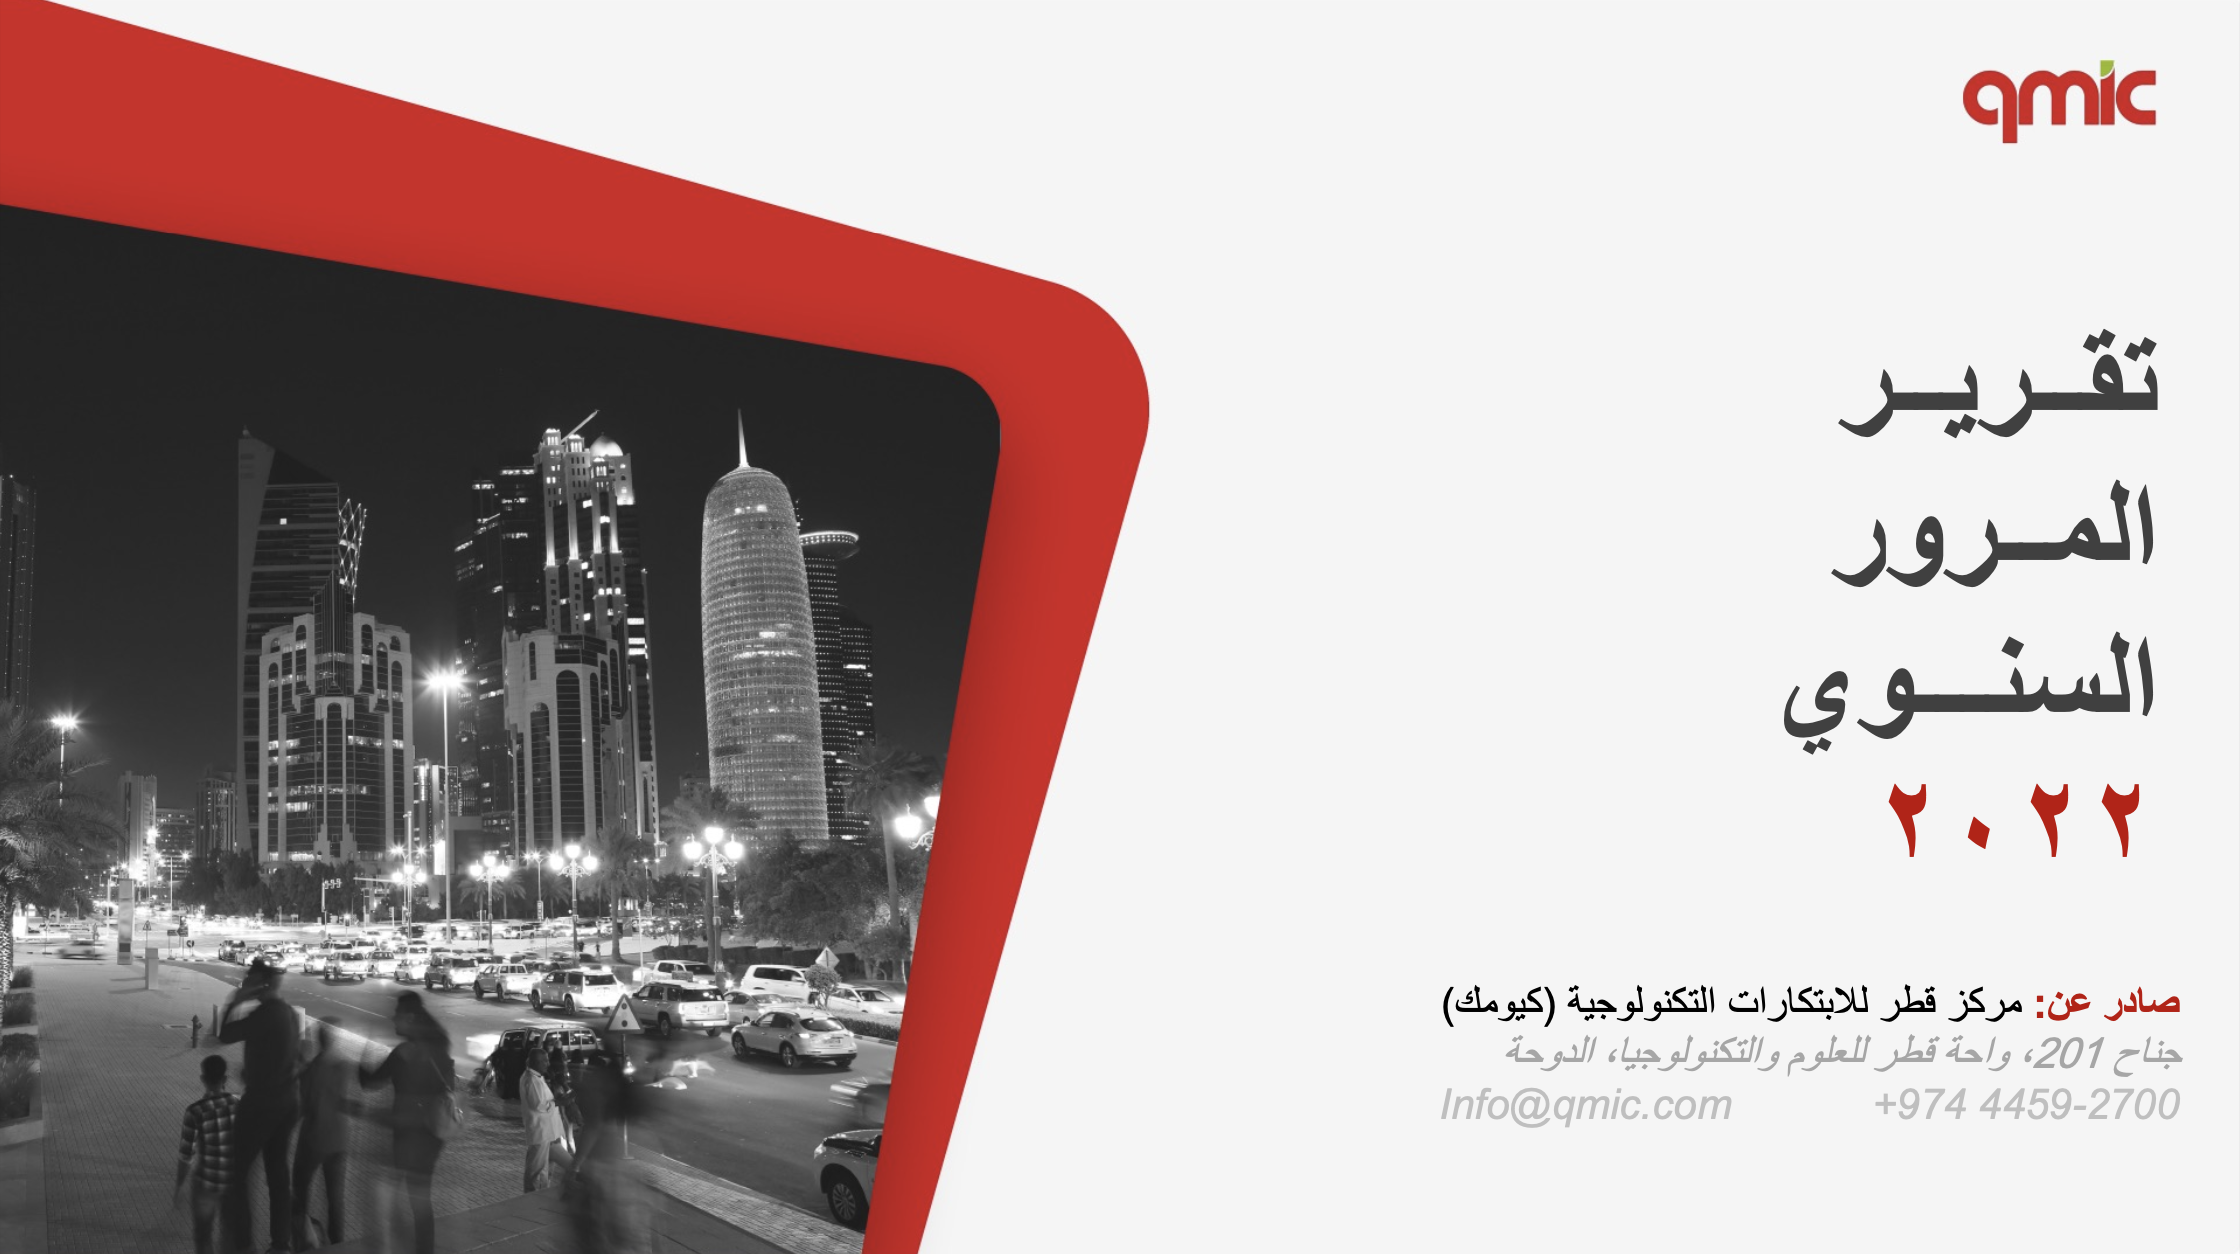 كيومك يعلن عن النتائج الرئيسية لتقرير حركة المرور في قطر ٢٠٢٢